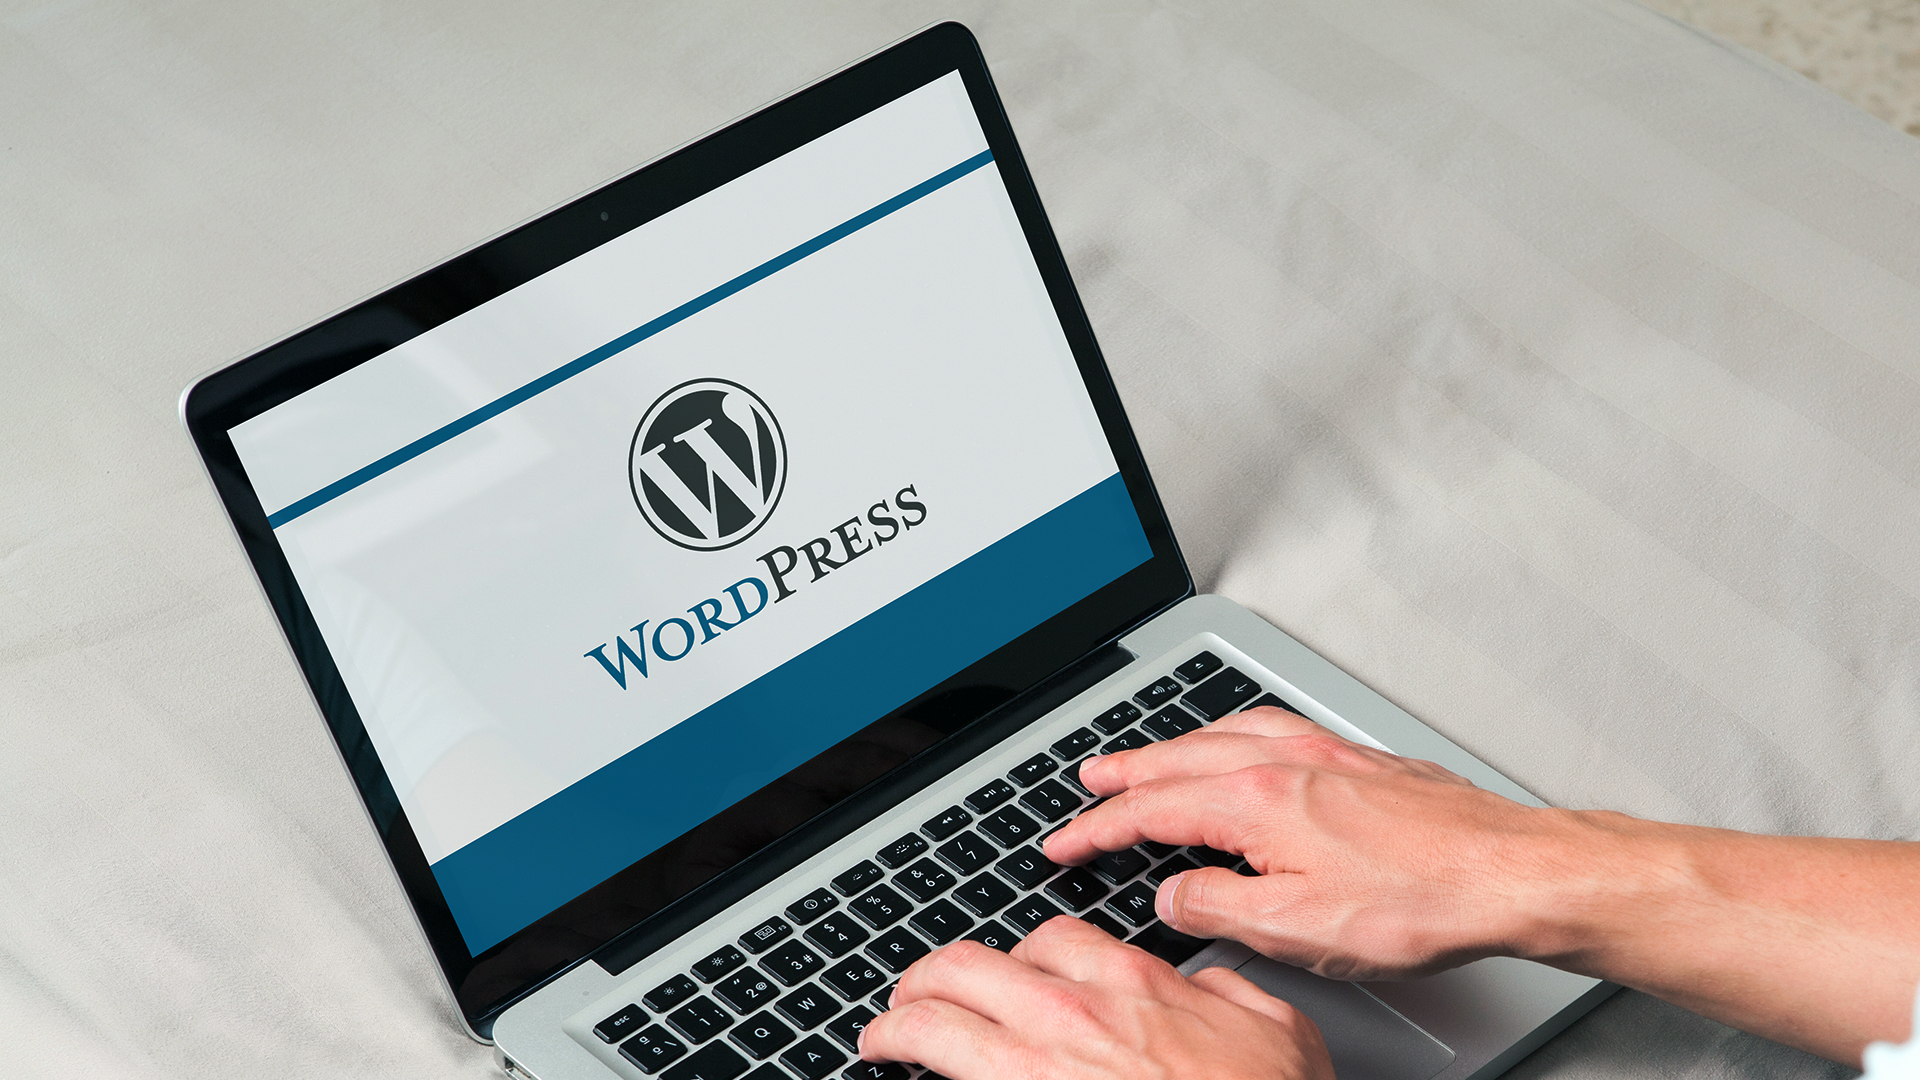 wordpress website designer